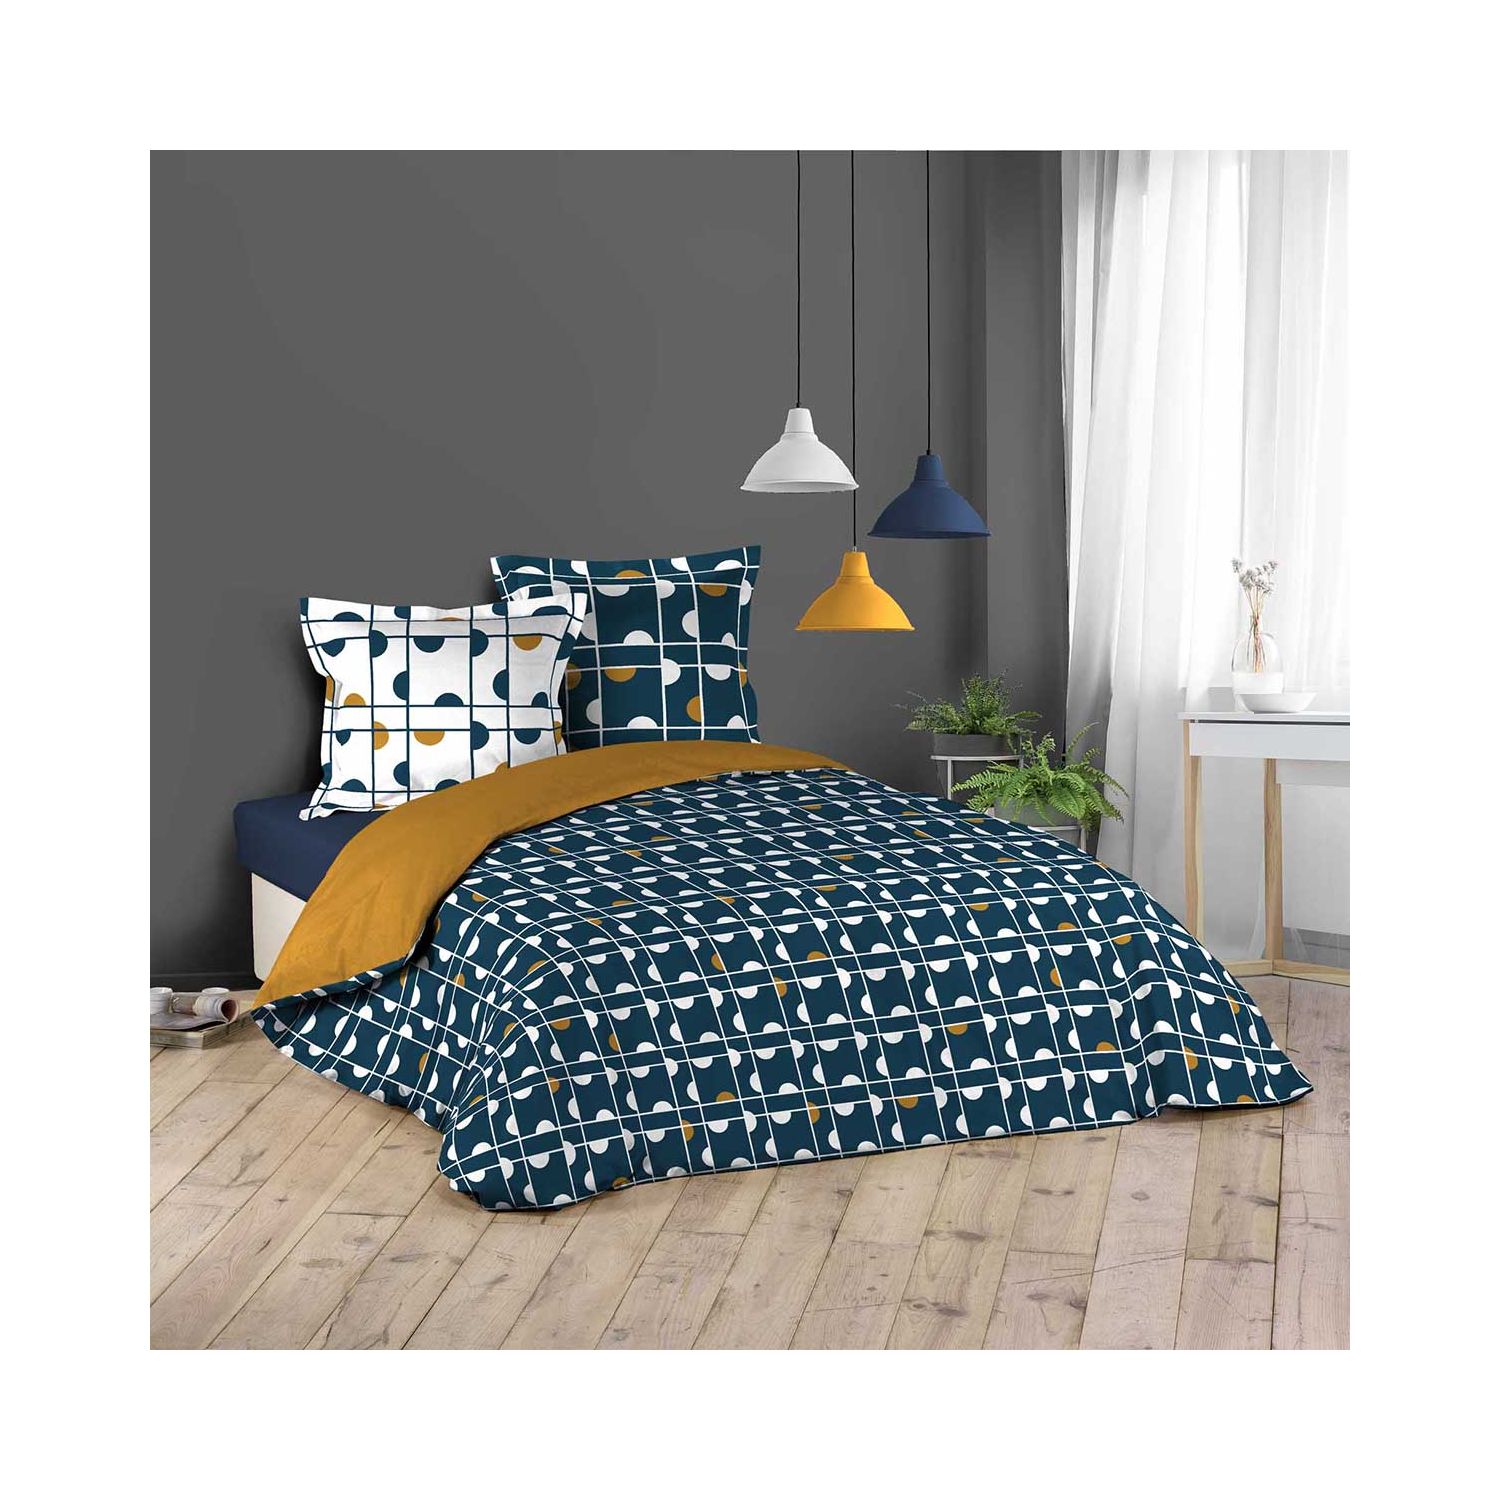 Housse de couette - 240 x 220 cm + taies - Motifs géométriques blanc, bleu et camel